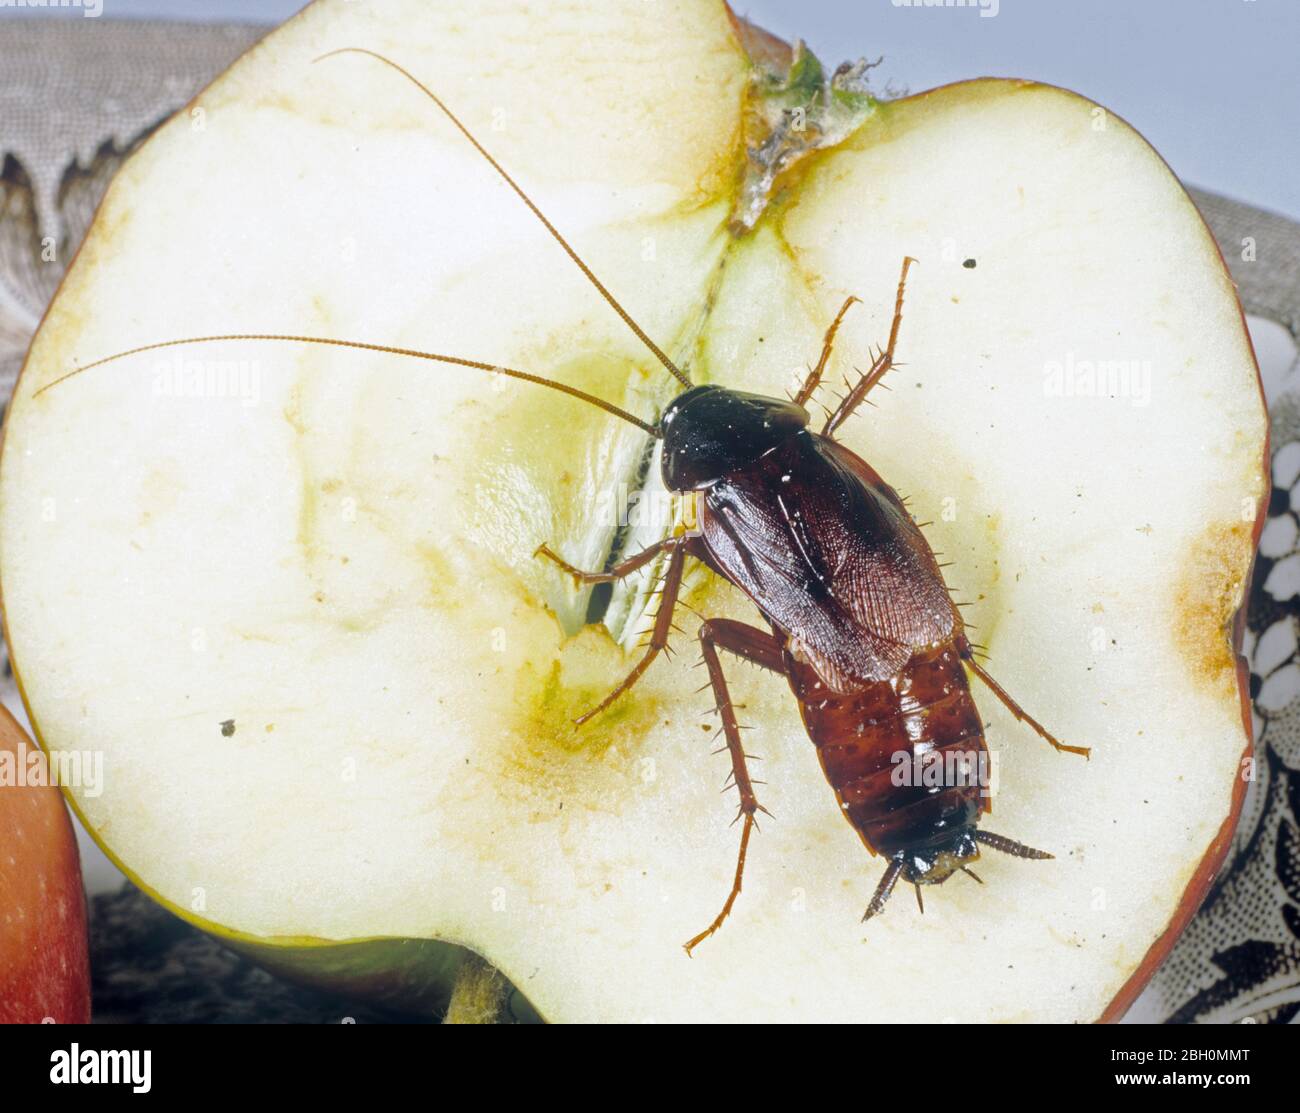 Orientalische Schabe (Blatta orientalis) Erwachsenen Haushalt und öffentliche Gesundheit Schädling auf einem Apfel Stockfoto